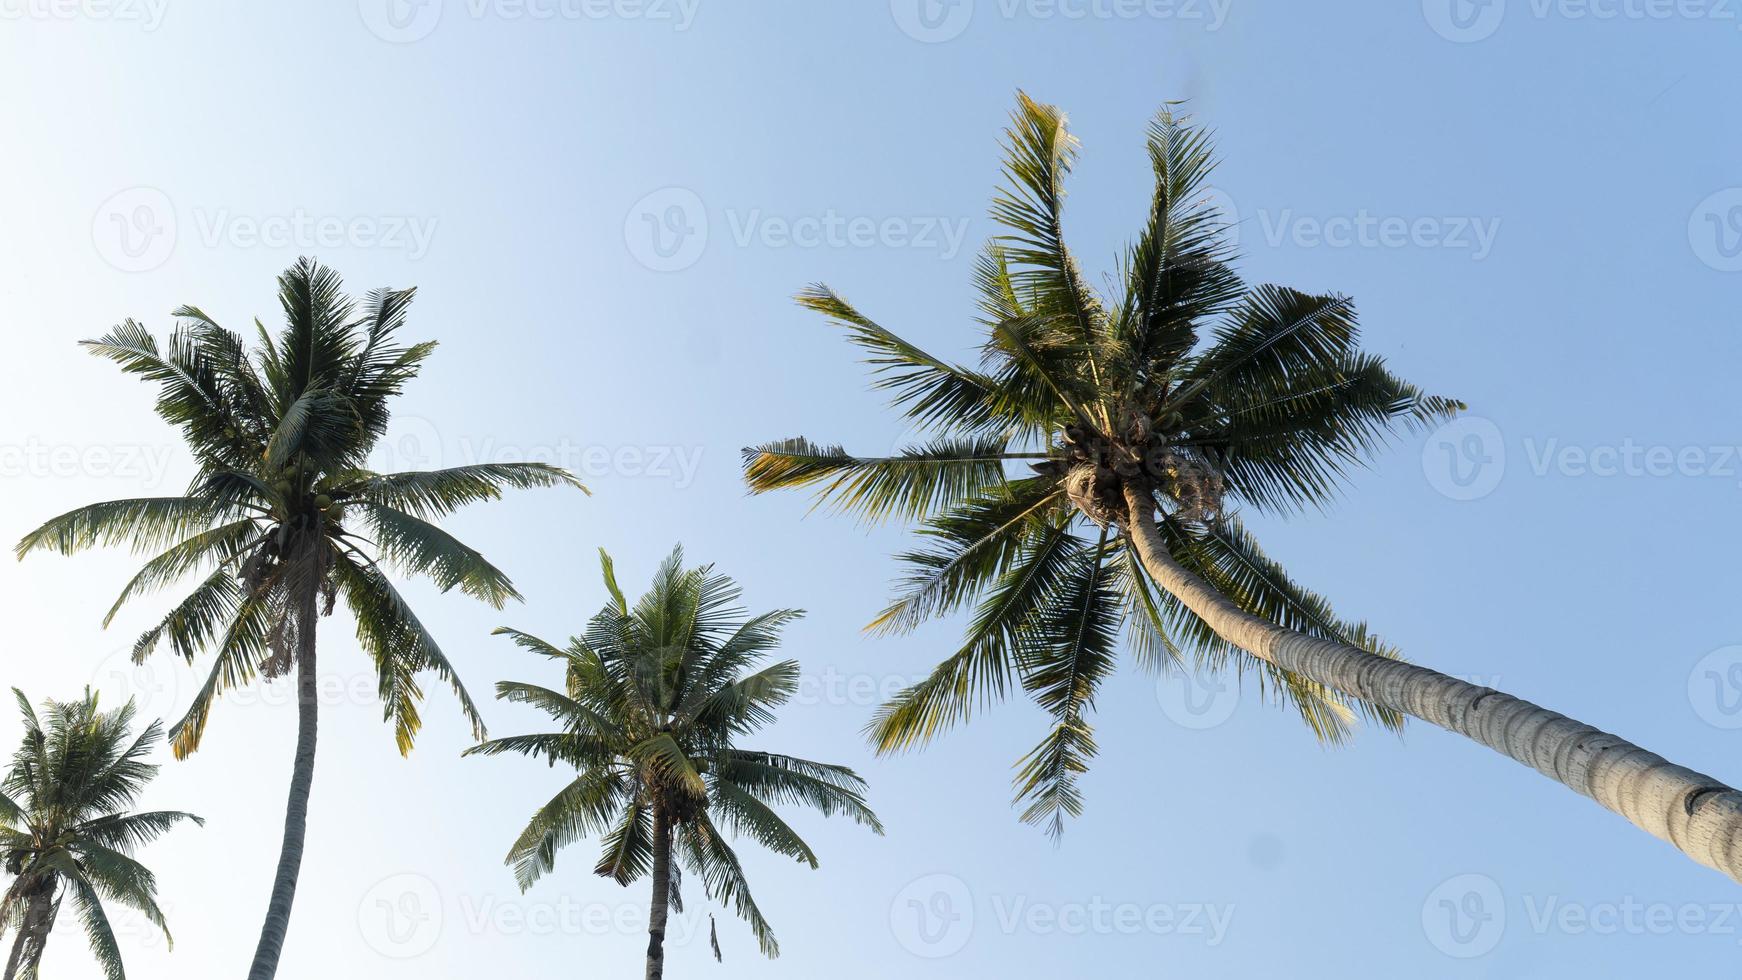 kokospalm in mierenmening op blauwe hemeldag foto